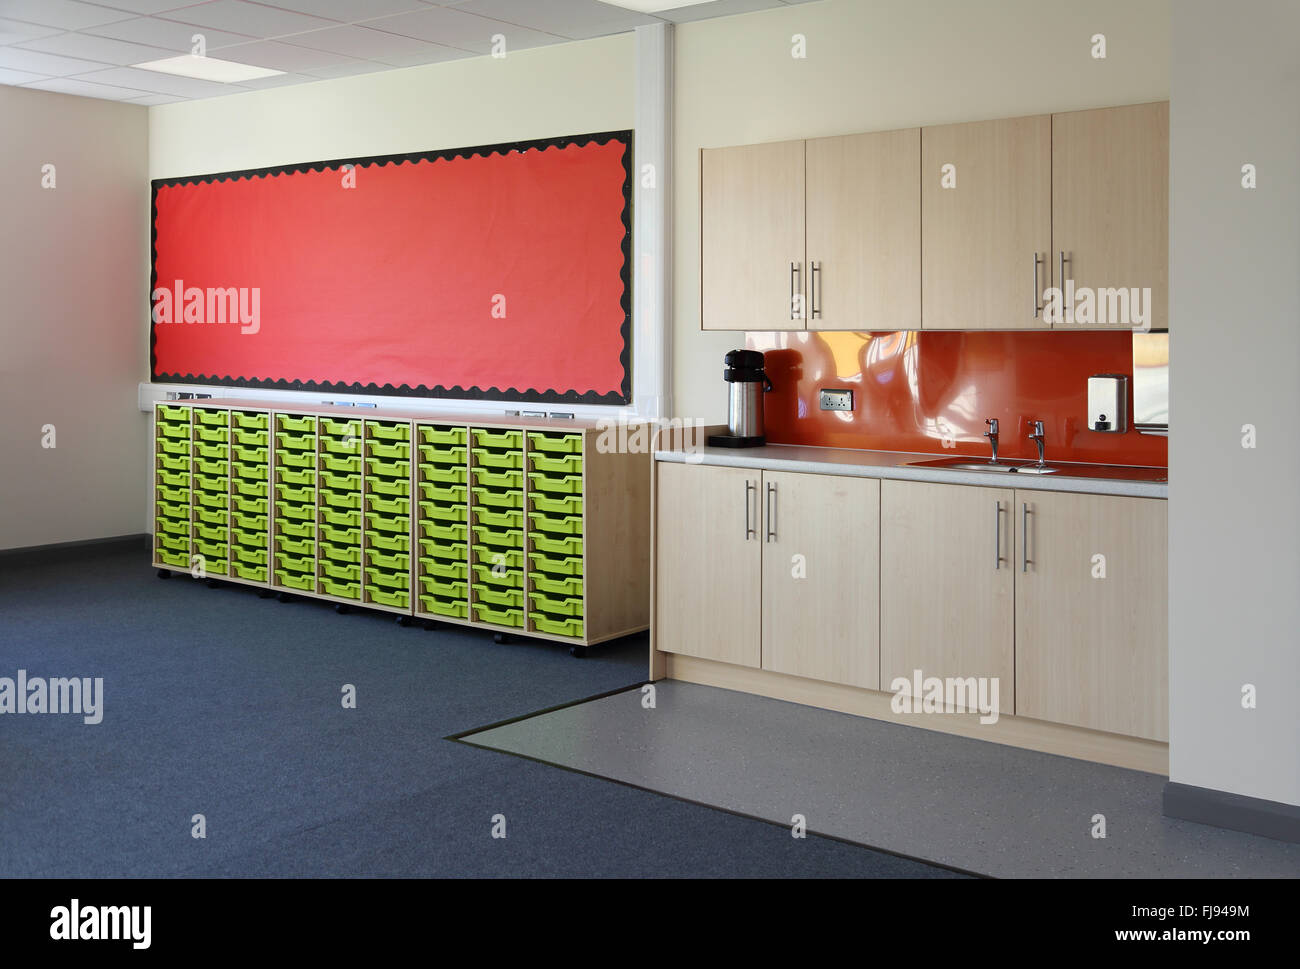 Zona umida in una nuova aula scolastica. Mostra lavello e la cucina in stile plus storage cassetti portaoggetti per gli alunni Foto Stock